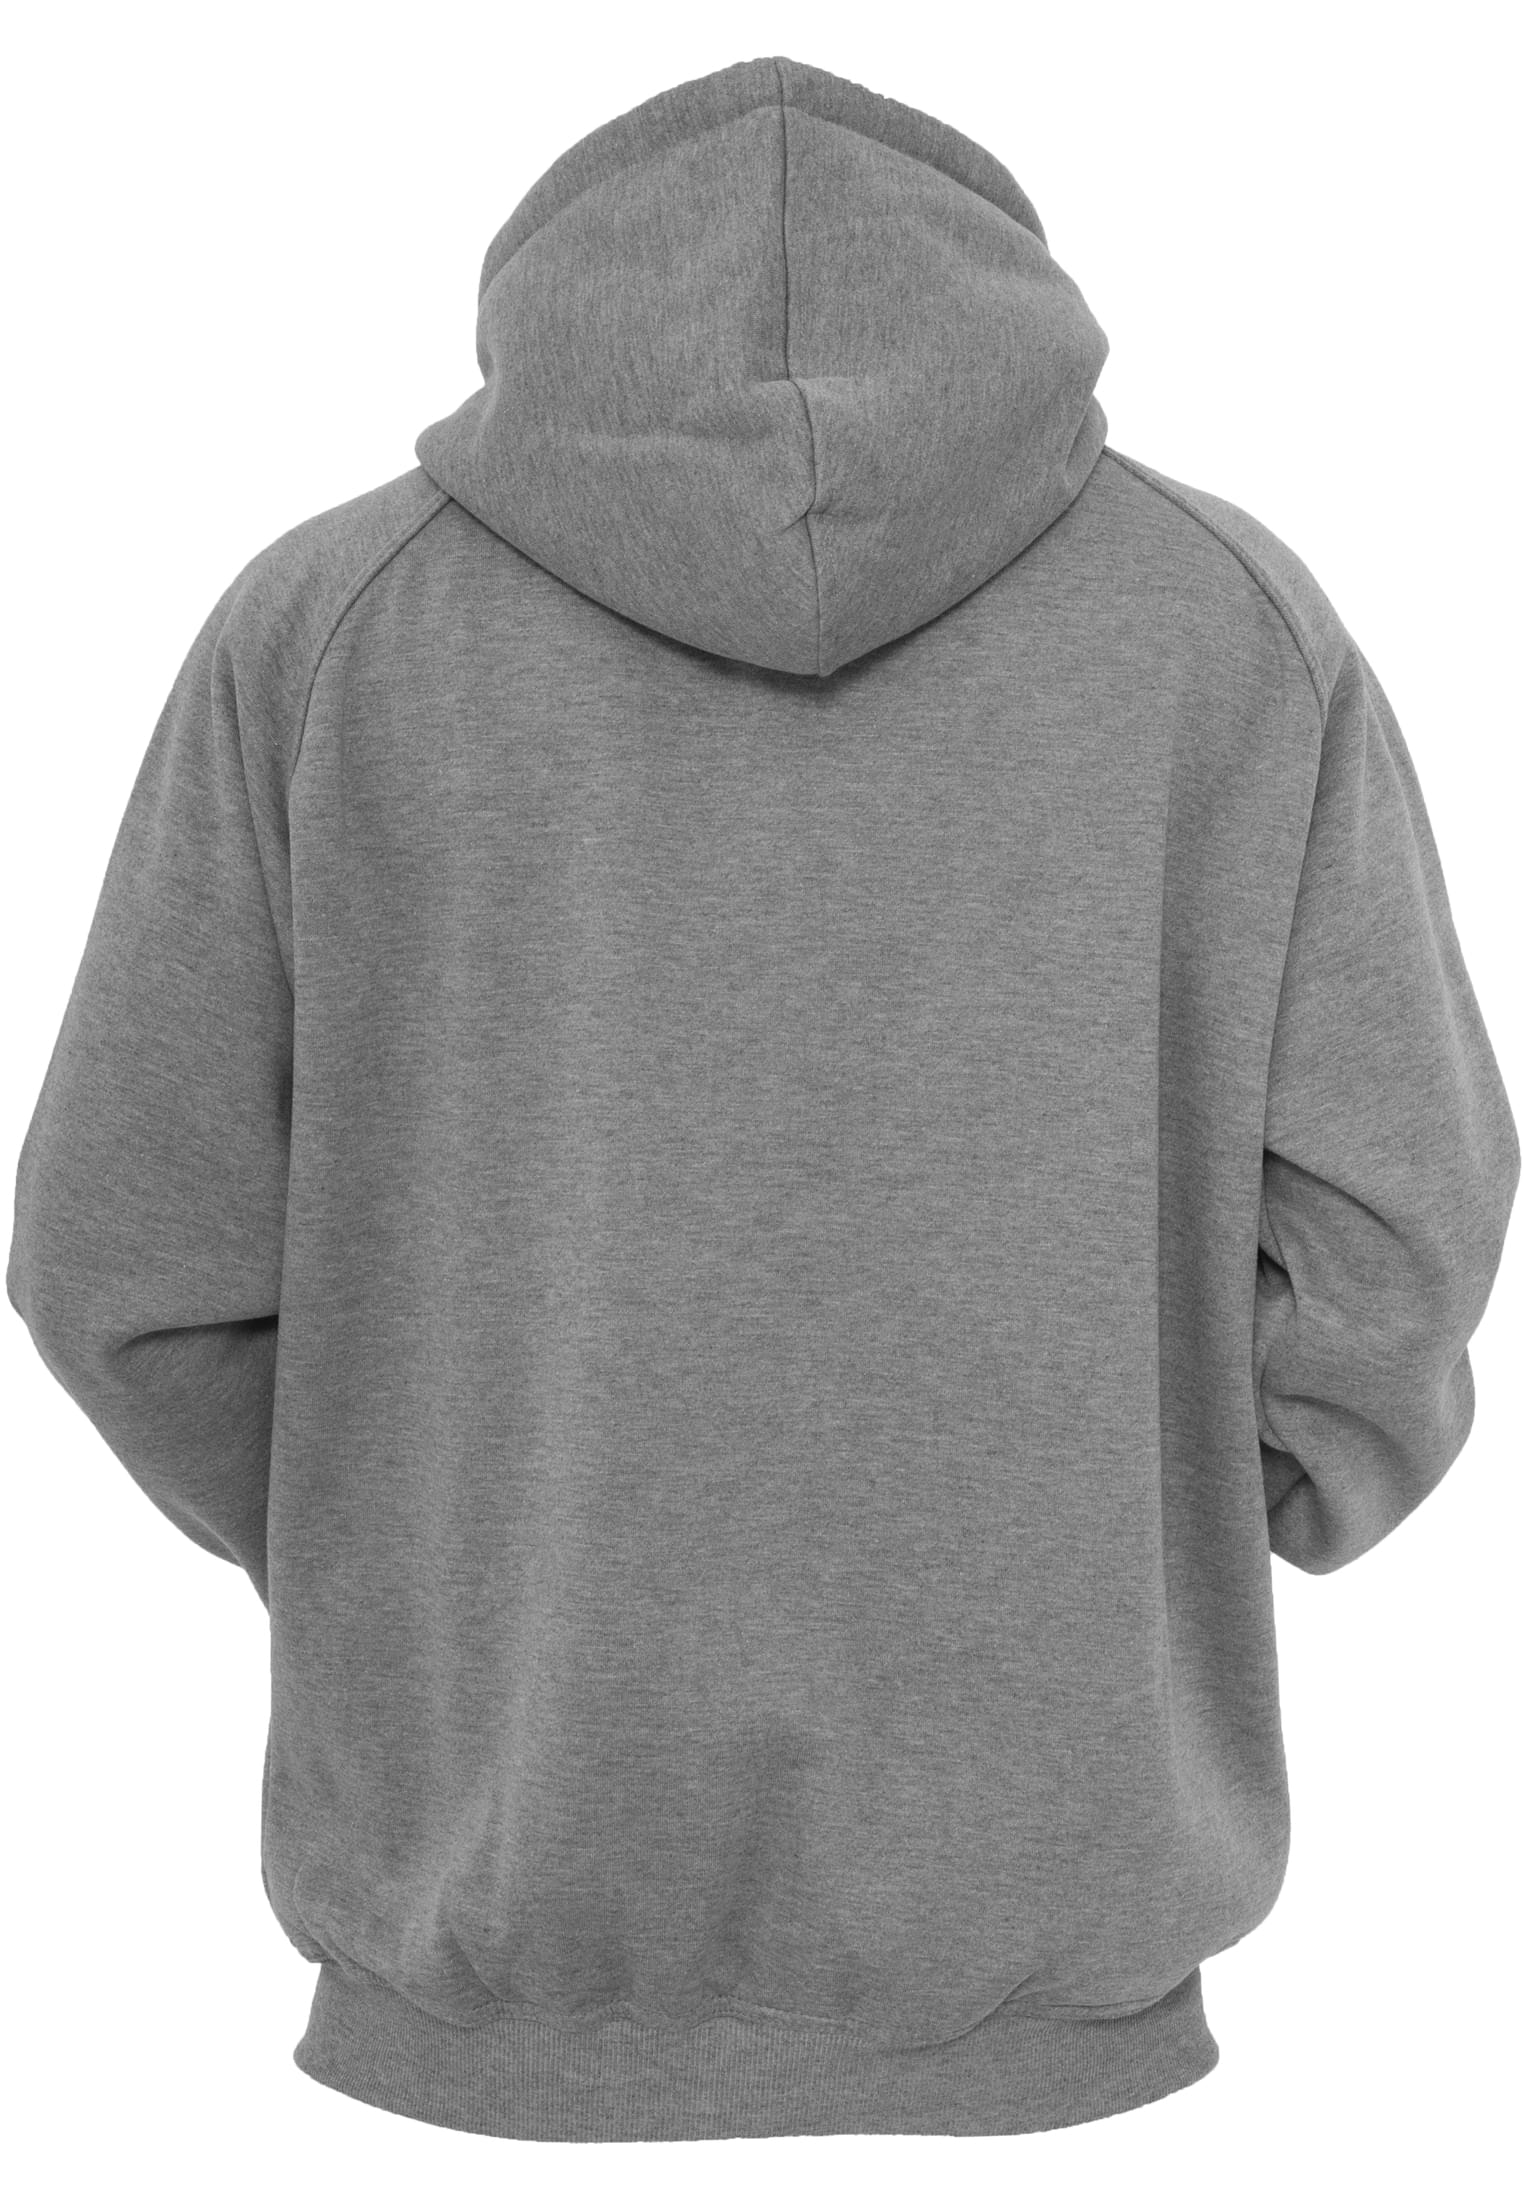 Zip-Hoodies Zip Hoody in Farbe grey